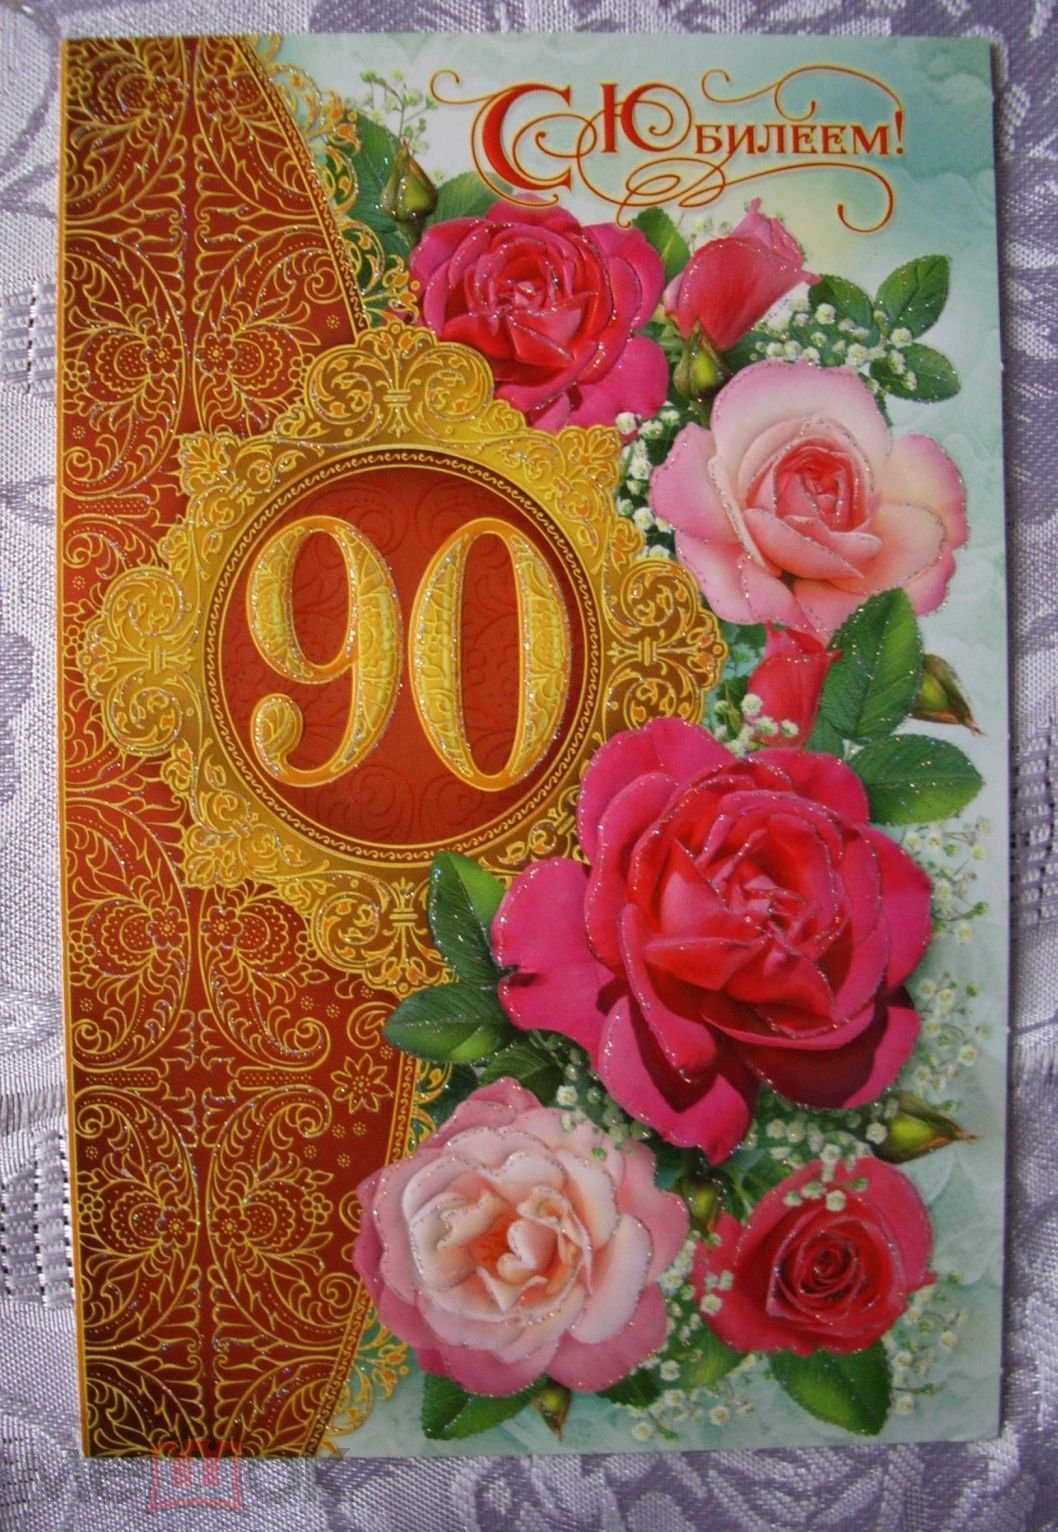 Поздравление с днем рождения 90 летием. Открытка с днем рождения 90 лет. С юбилеем 90 лет. Открытка на 90 летний юбилей. Открытка с юбилеем 90 лет женщине.